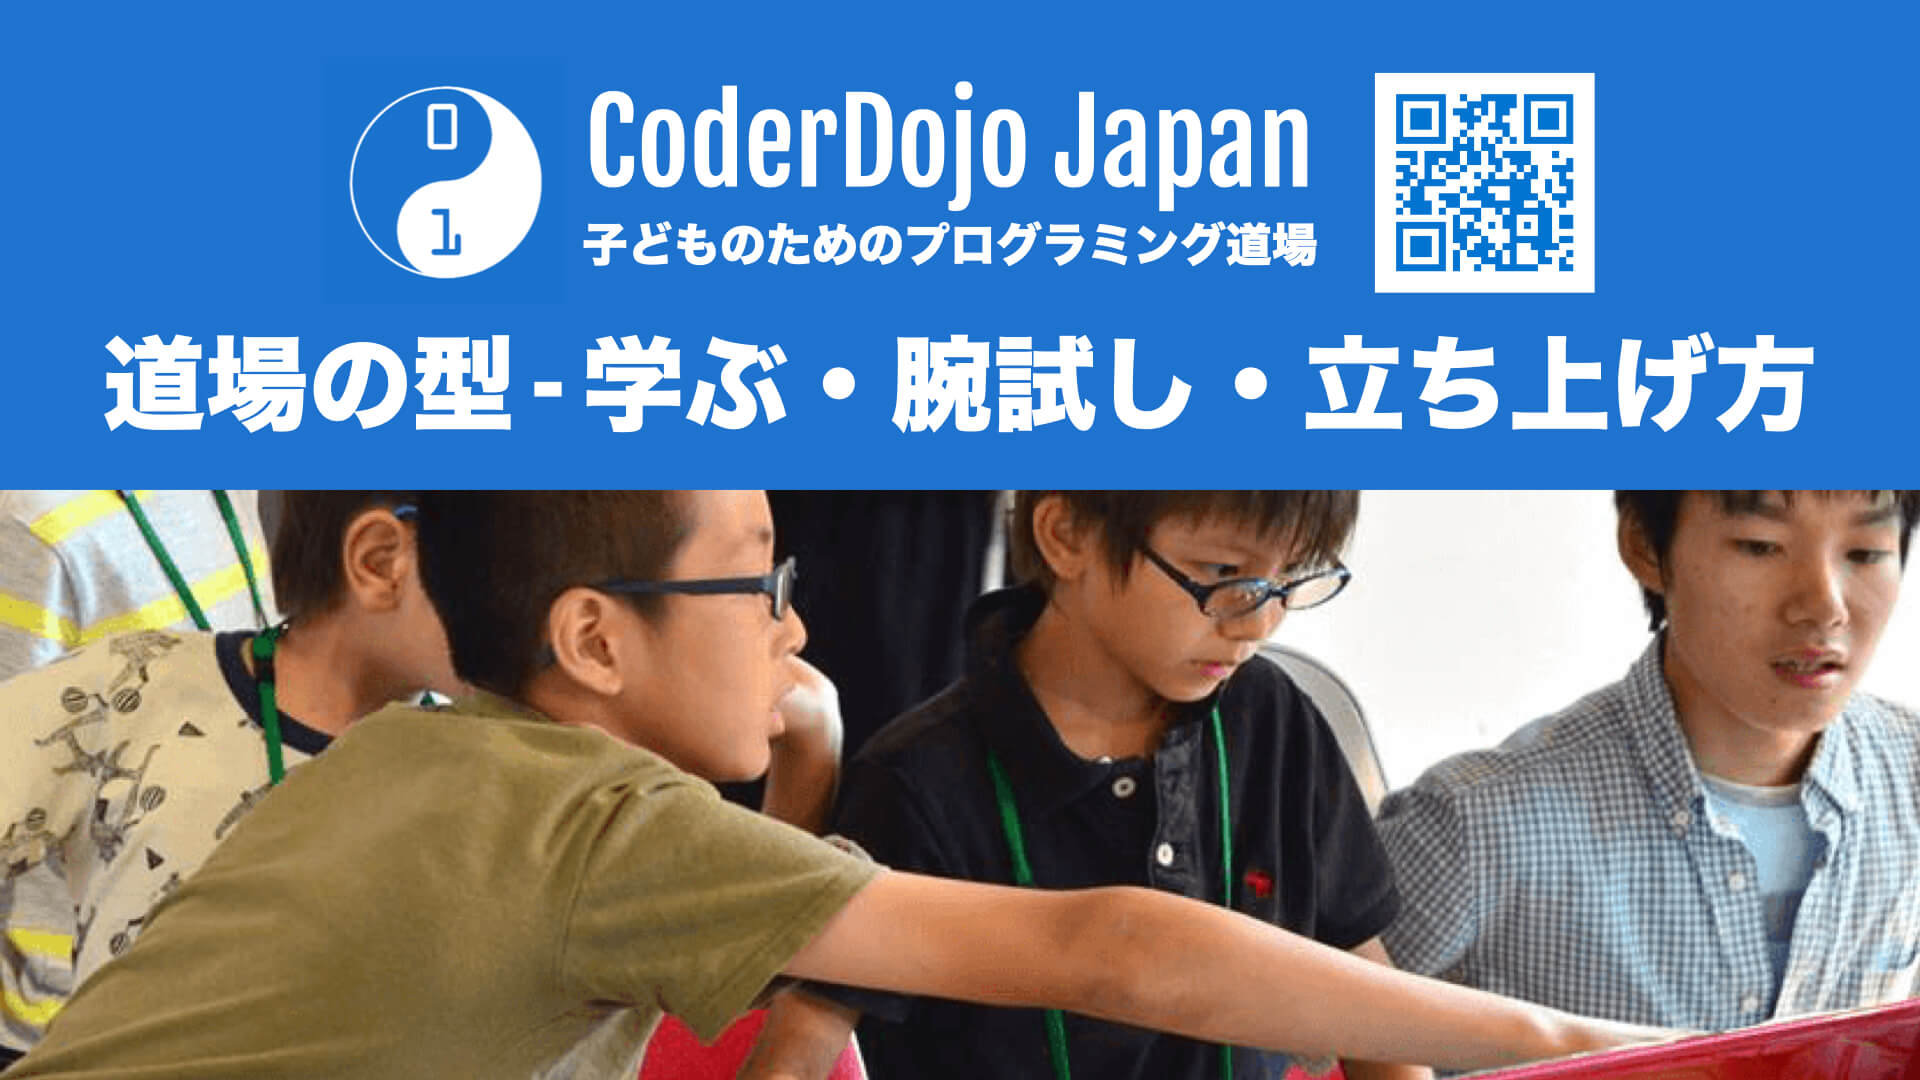 CoderDojo 情報まとめ (Kata) - CoderDojo Japan